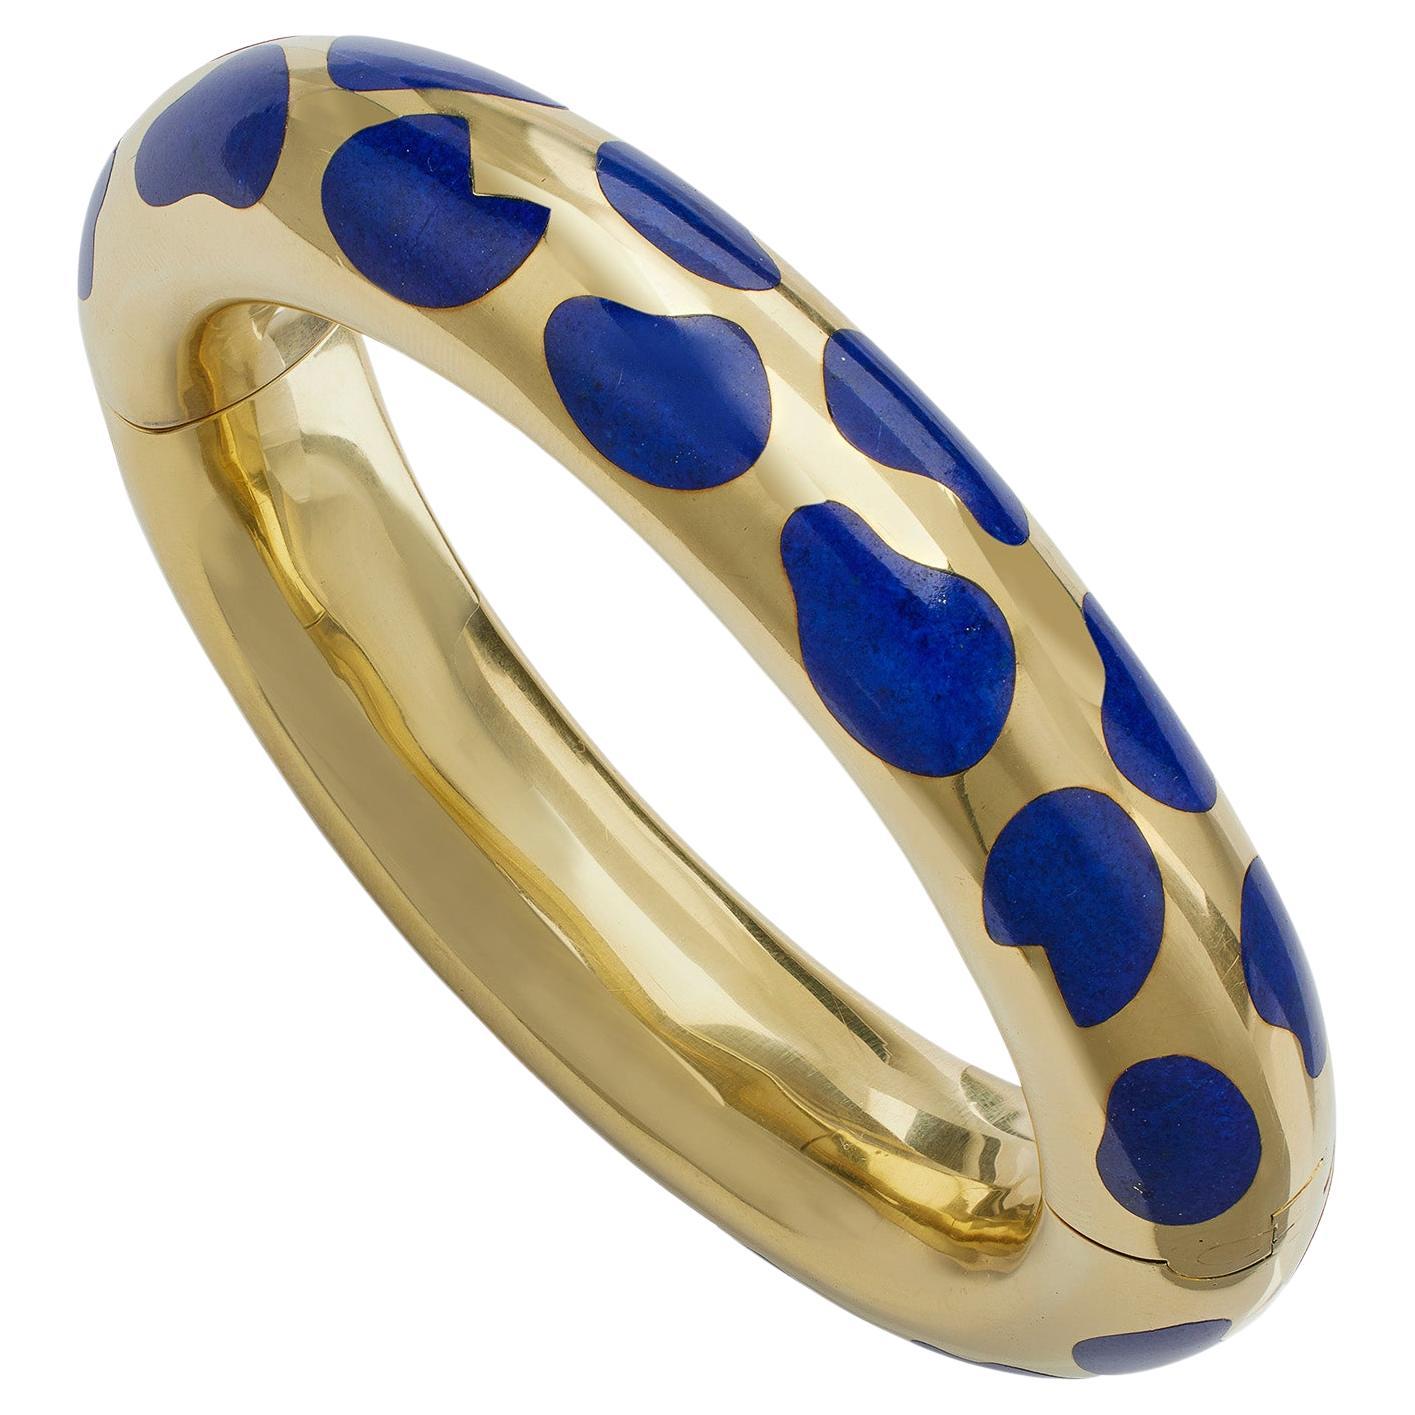 Tiffany & Co. 18K Gold and Lapis Lazuli Bangle Bracelet by Angela Cummings